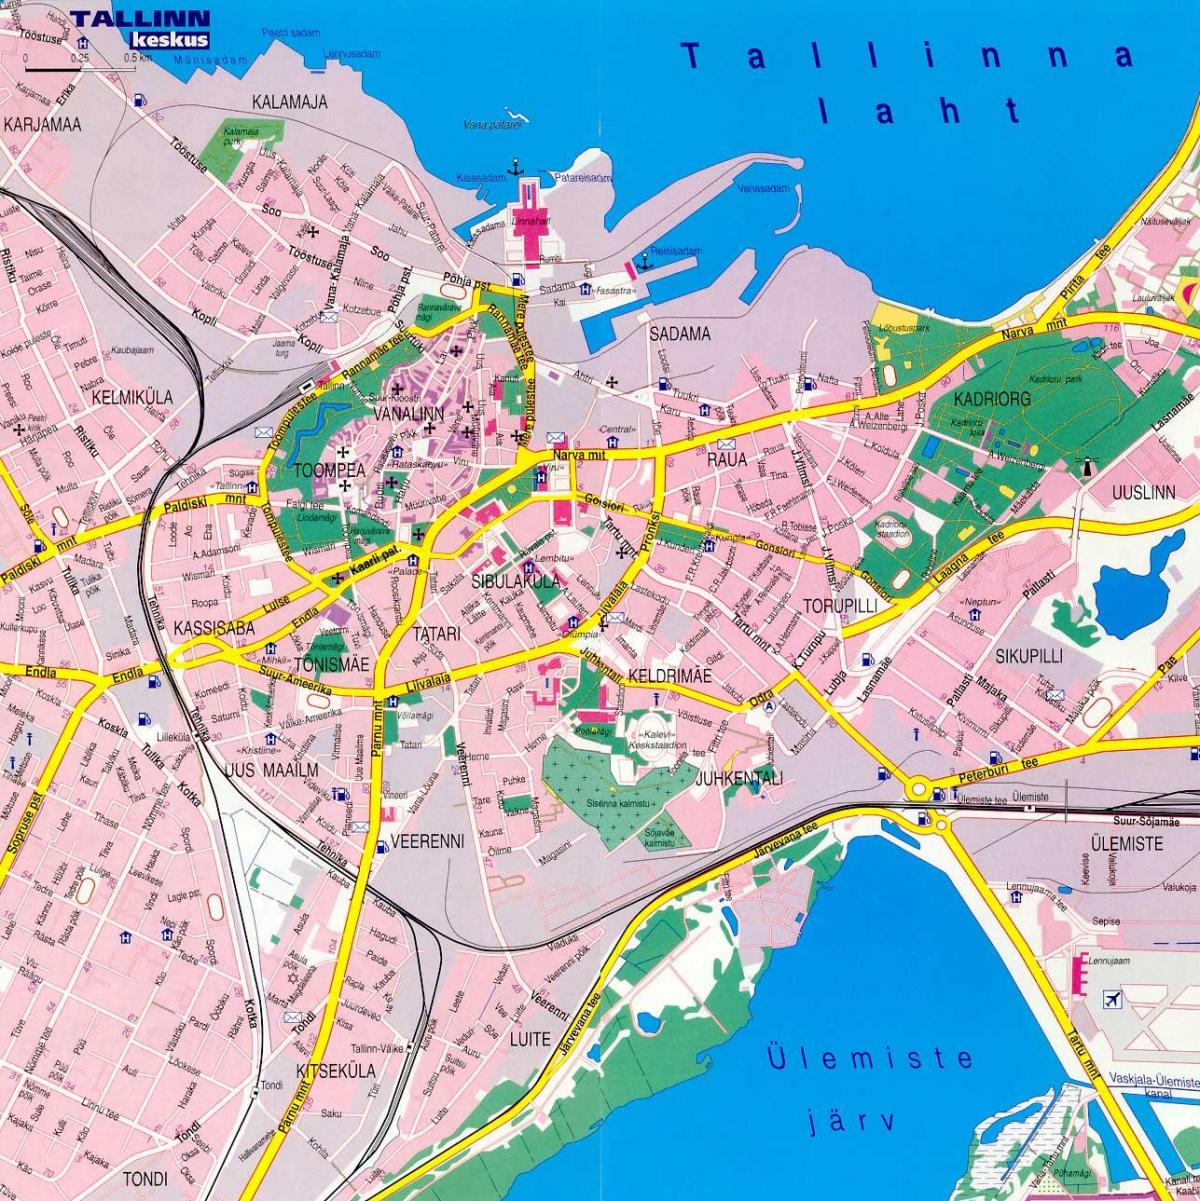 خريطة استونيا تالين 